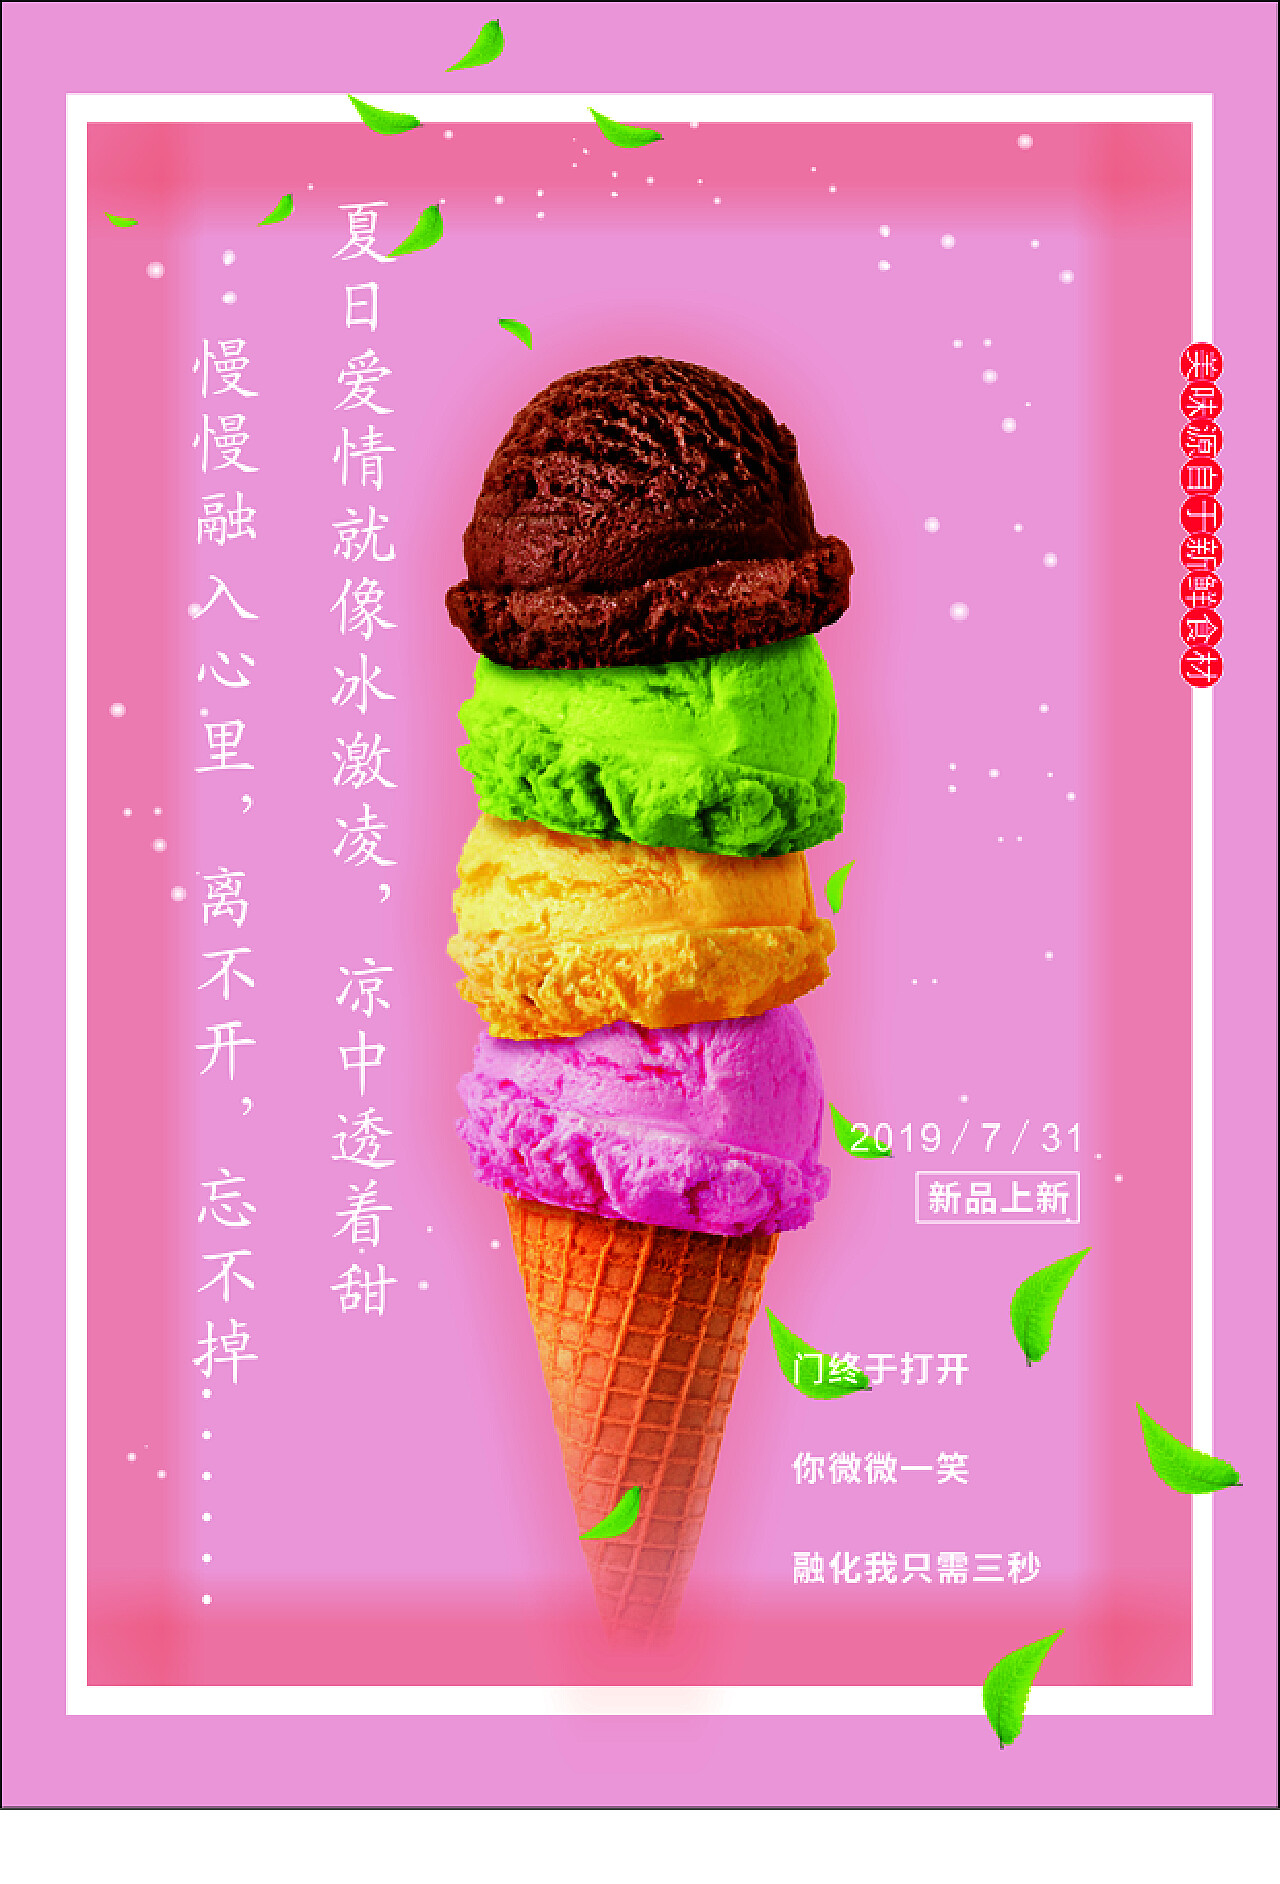 吃冰淇淋的小男孩。吃冰淇淋的男孩。水彩插图图片免费下载-5005281318-千图网Pro